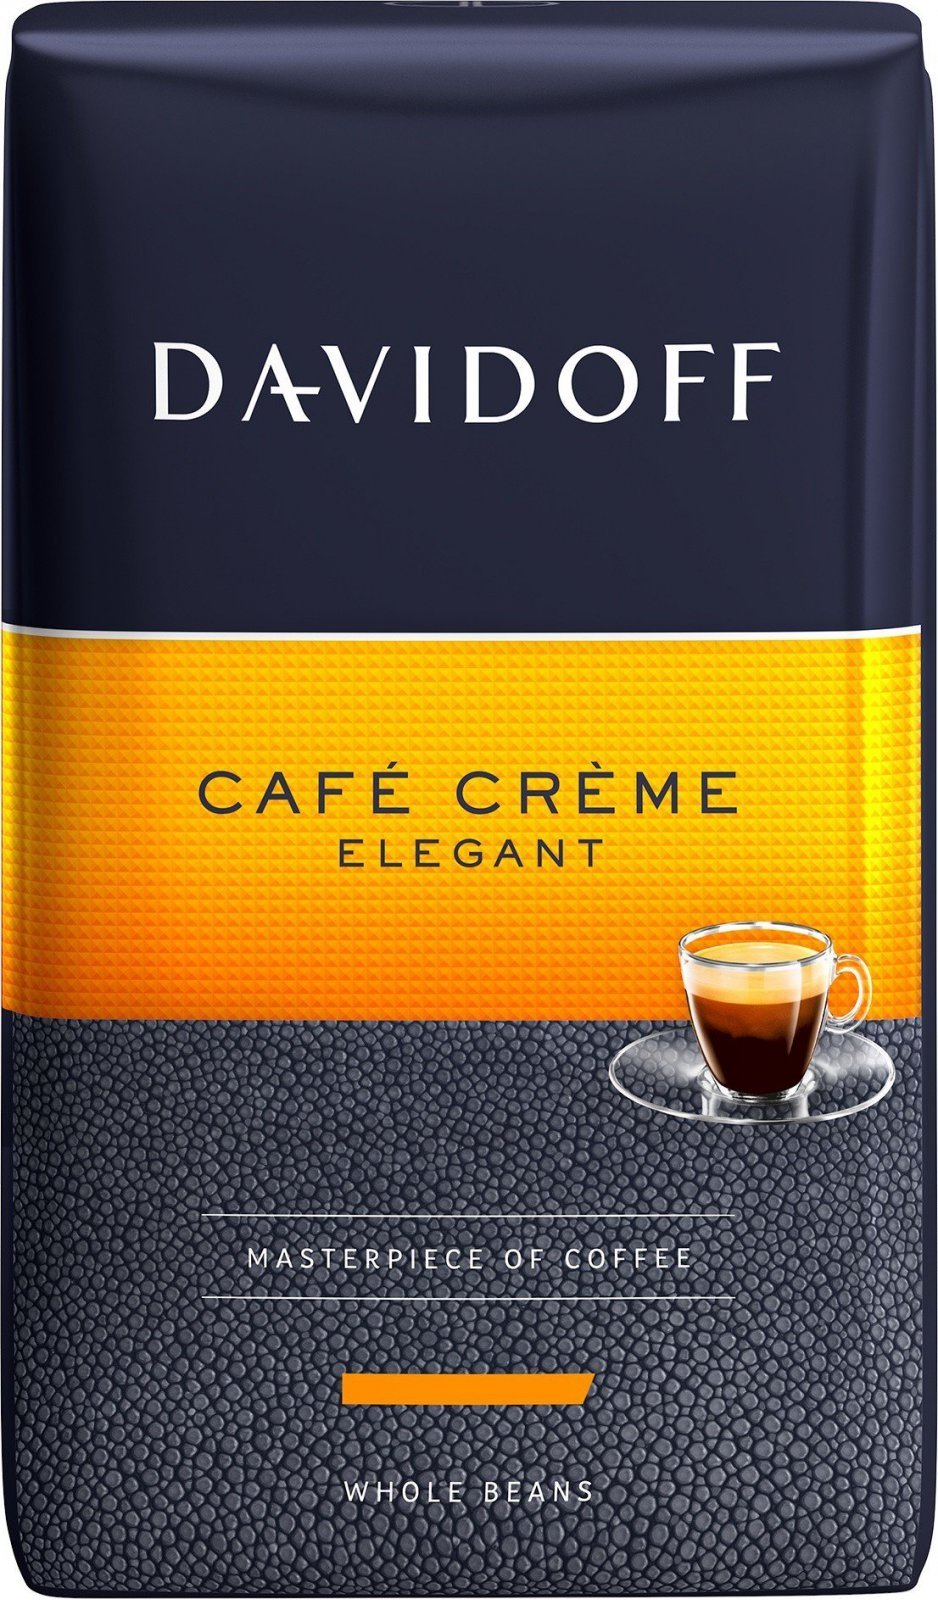 Davidoff Cafe Creme Elegant Çekirdek Kahve 500 Gr.